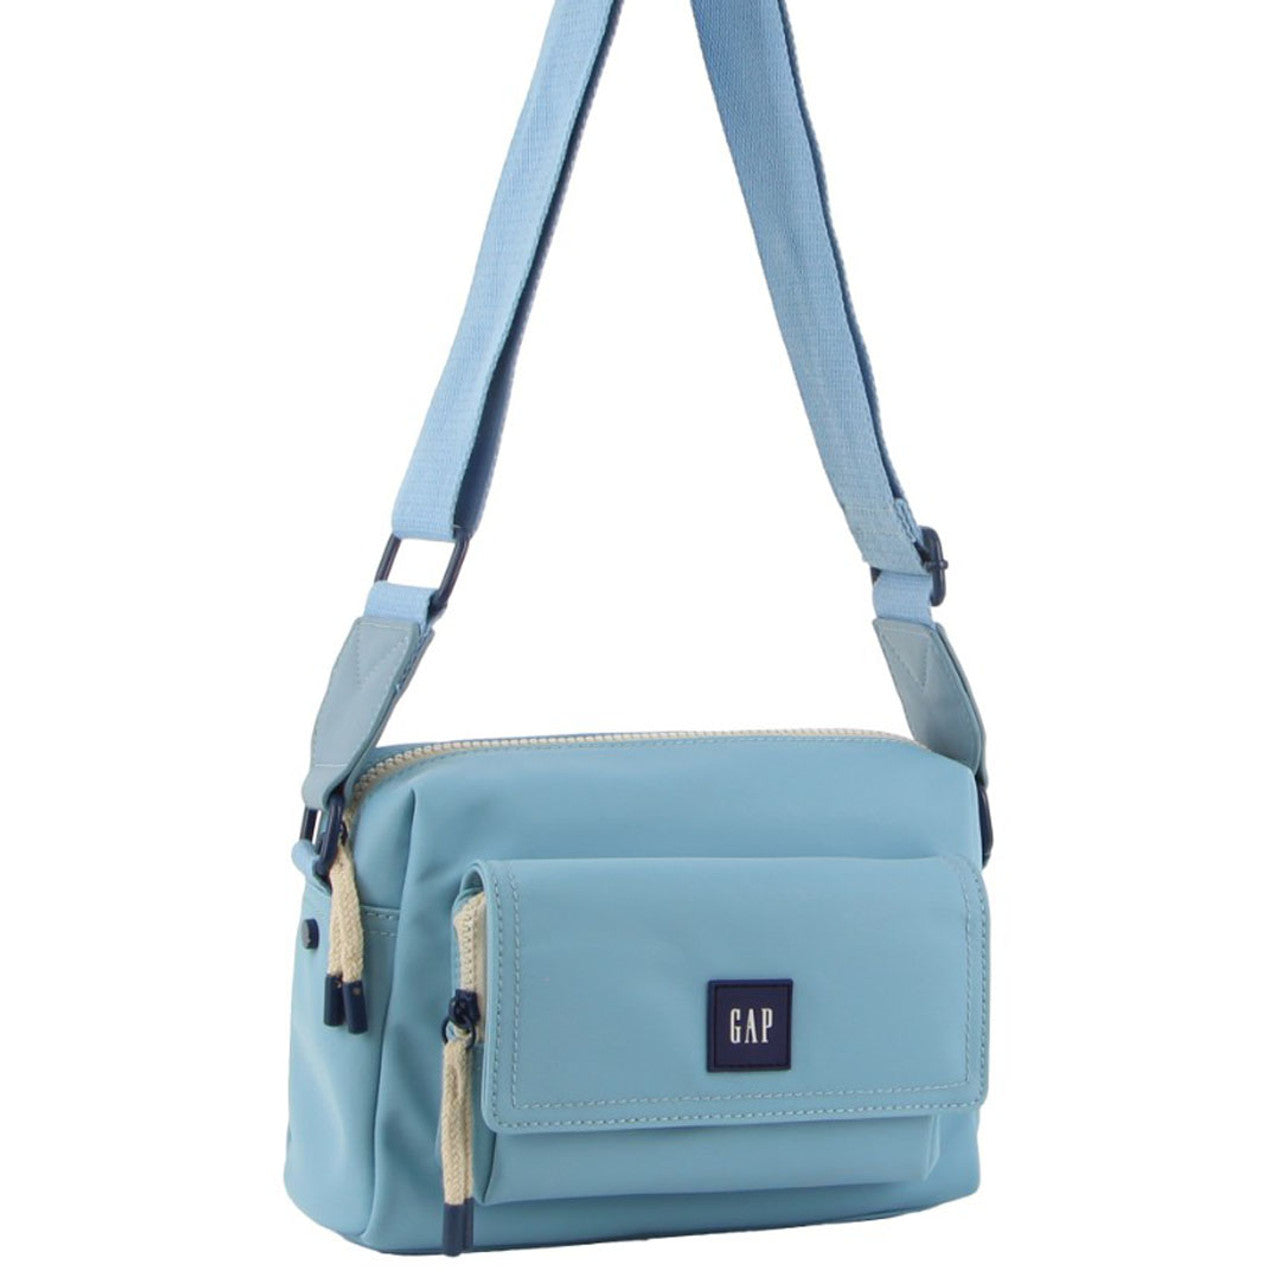 GAP - 10 Nylon shoulder bag front pocket - Light Blue